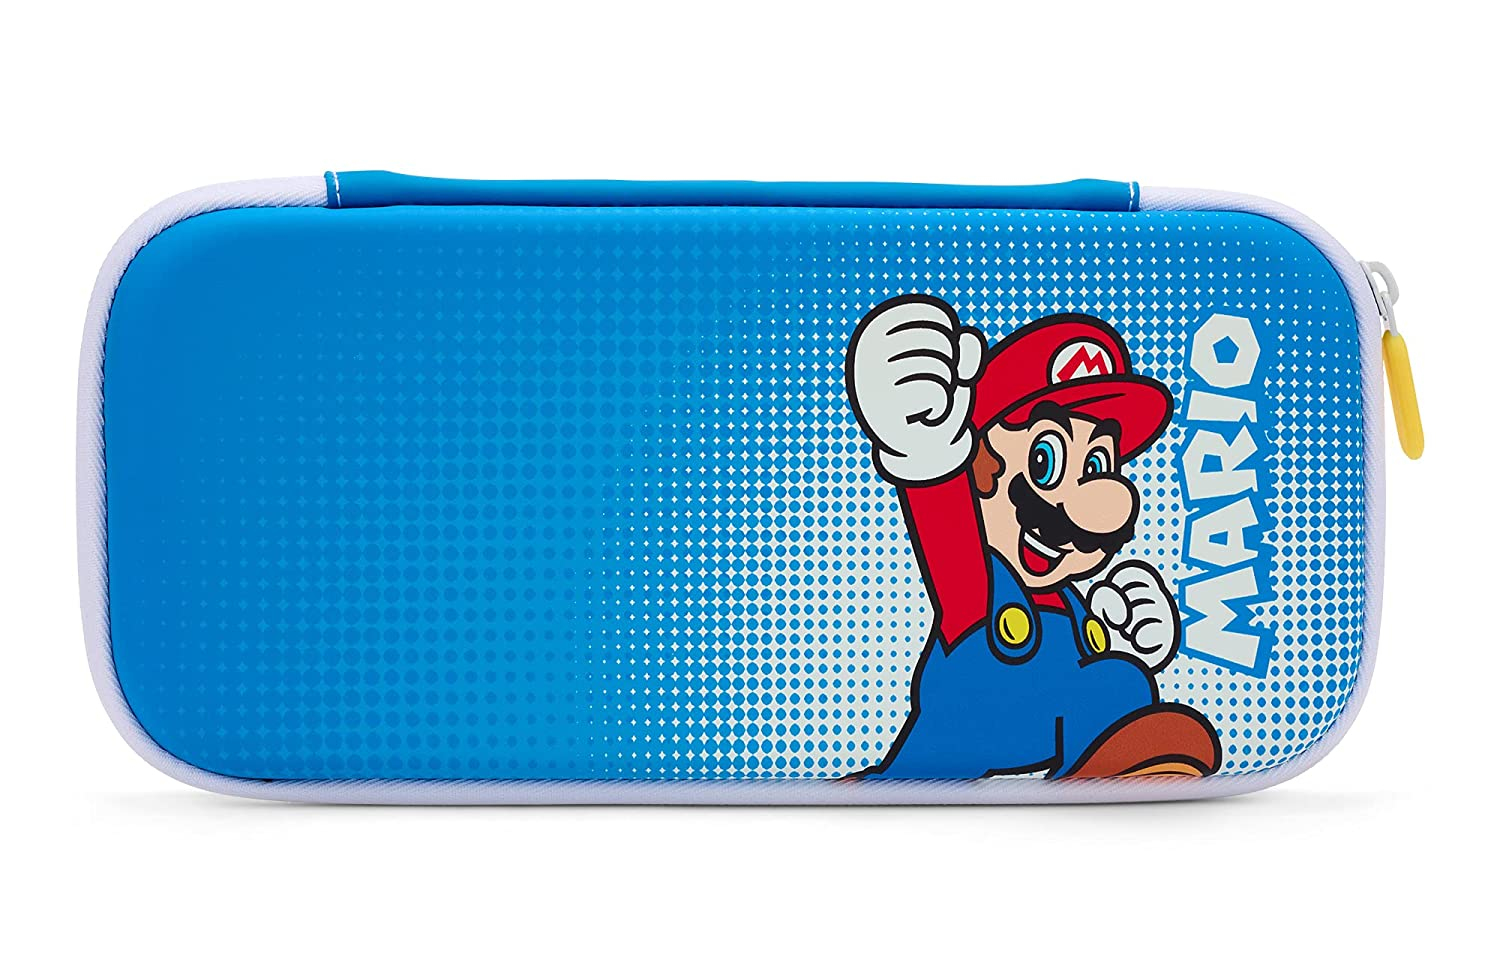 PowerA 1522649-01 portable game console case Hardshell case Nintendo Multicolour